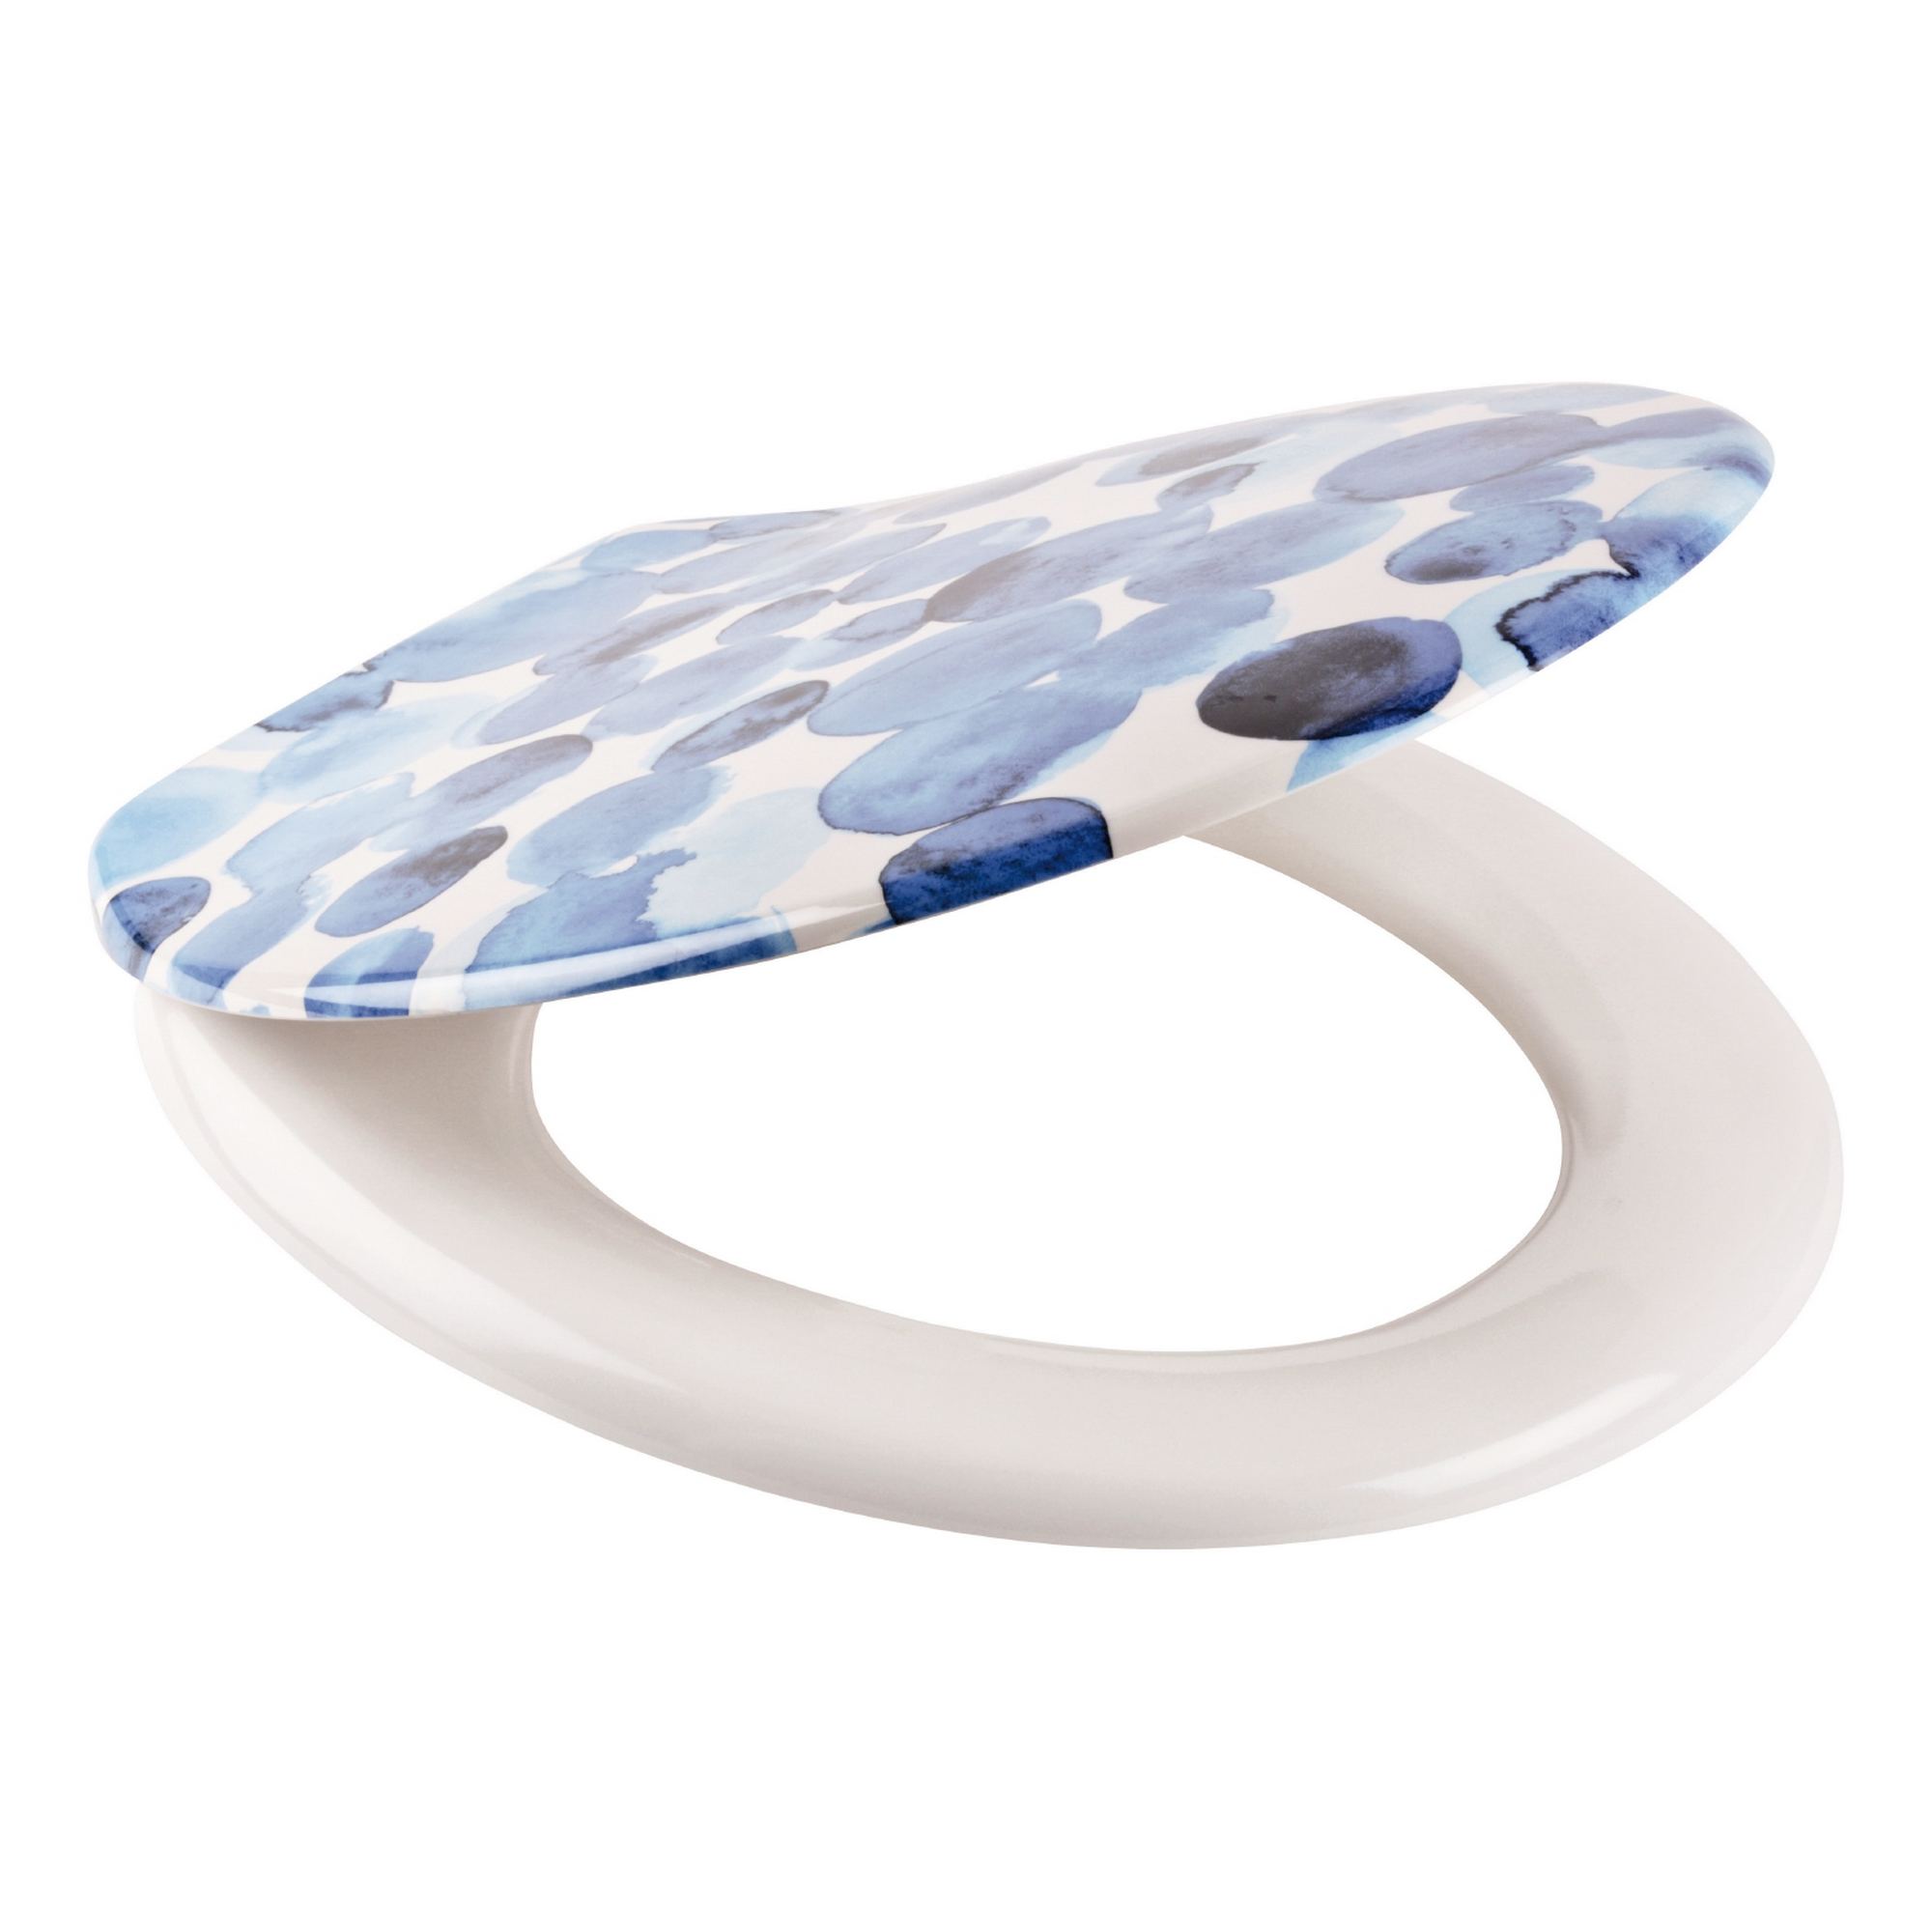 WC-Sitz 'Dekor Tupfen' blau/weiß Duroplast, mit Absenkautomatik + product picture